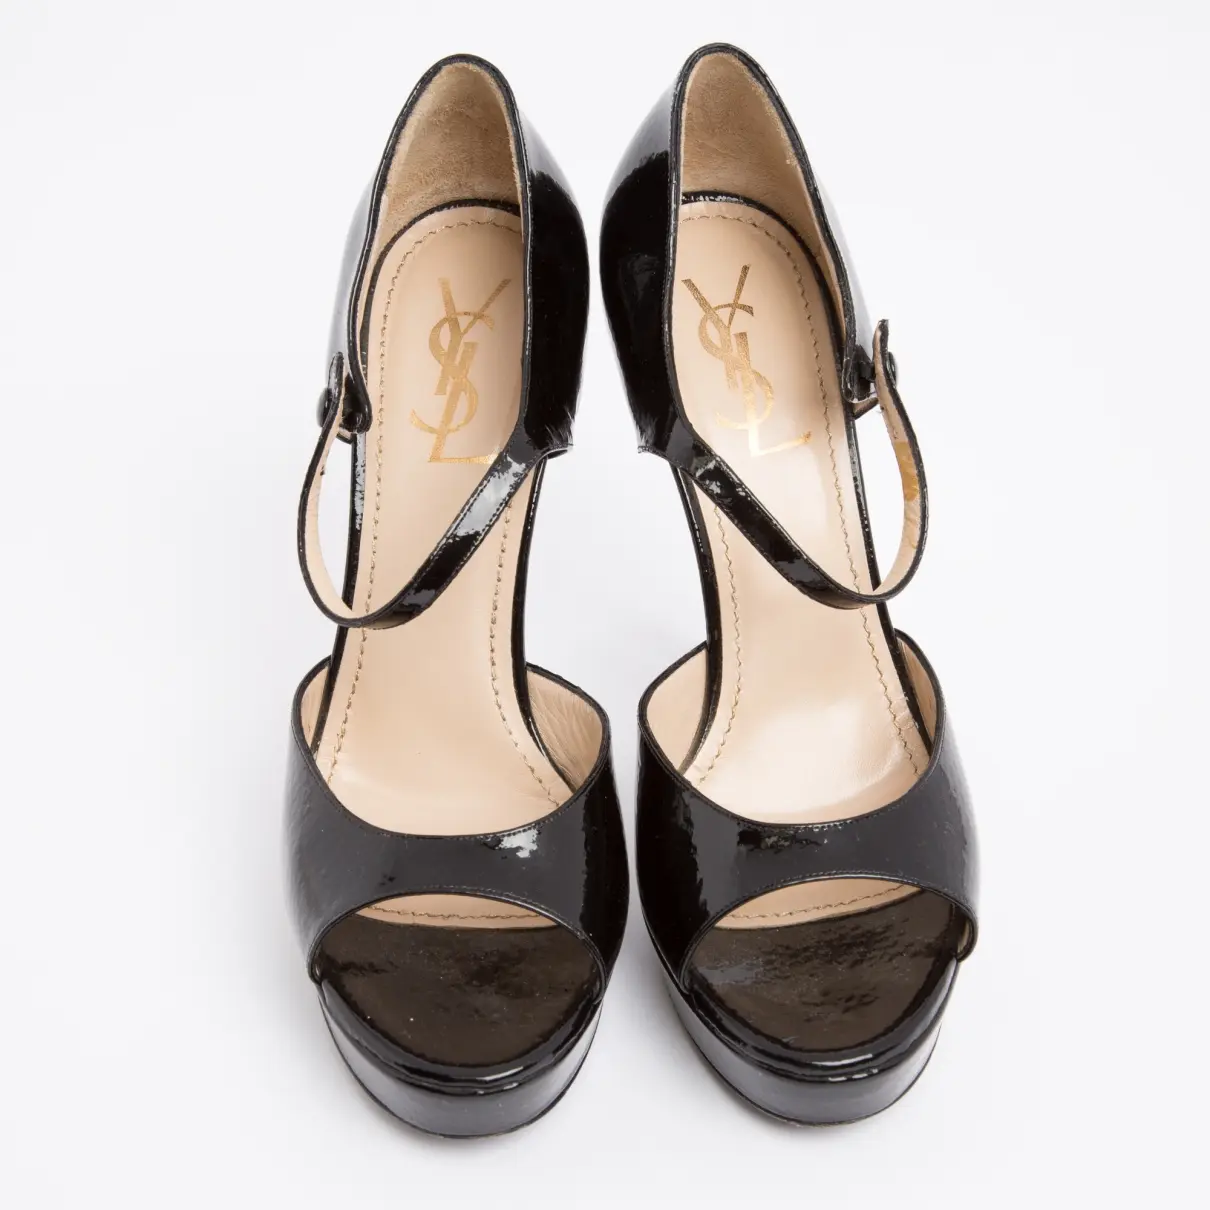 Buy Yves Saint Laurent Patent leather sandals online - Vintage